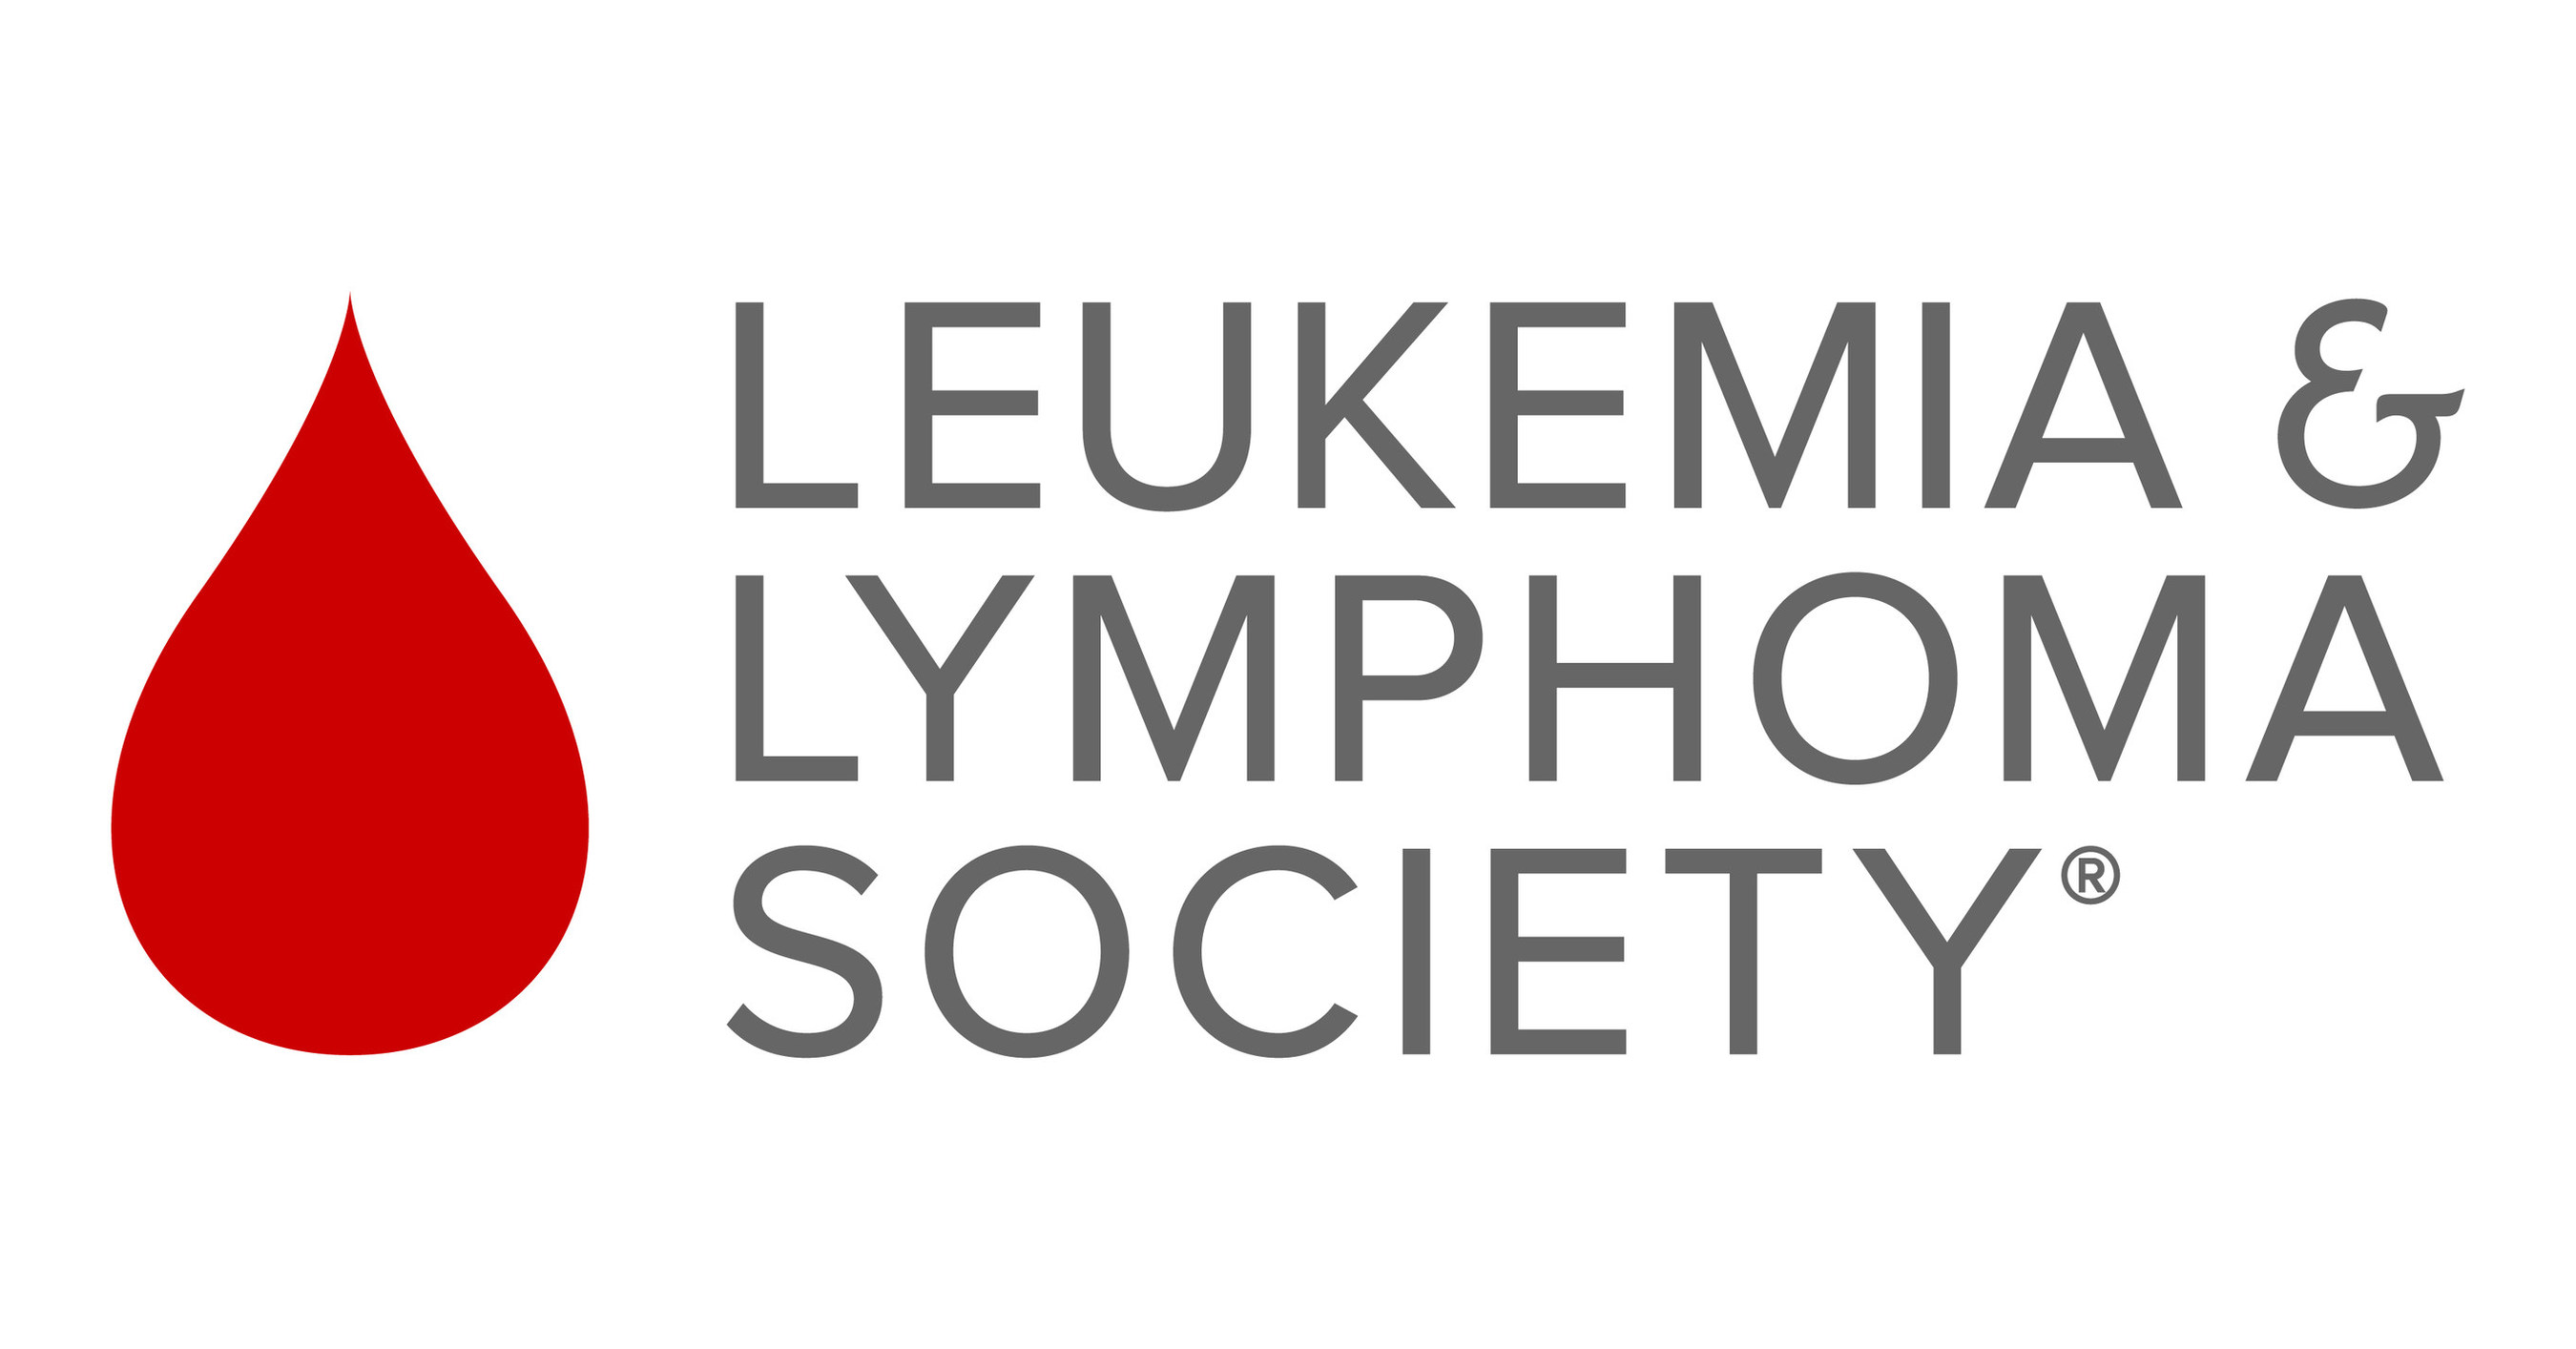 The Leukemia Lymphoma Society S Light